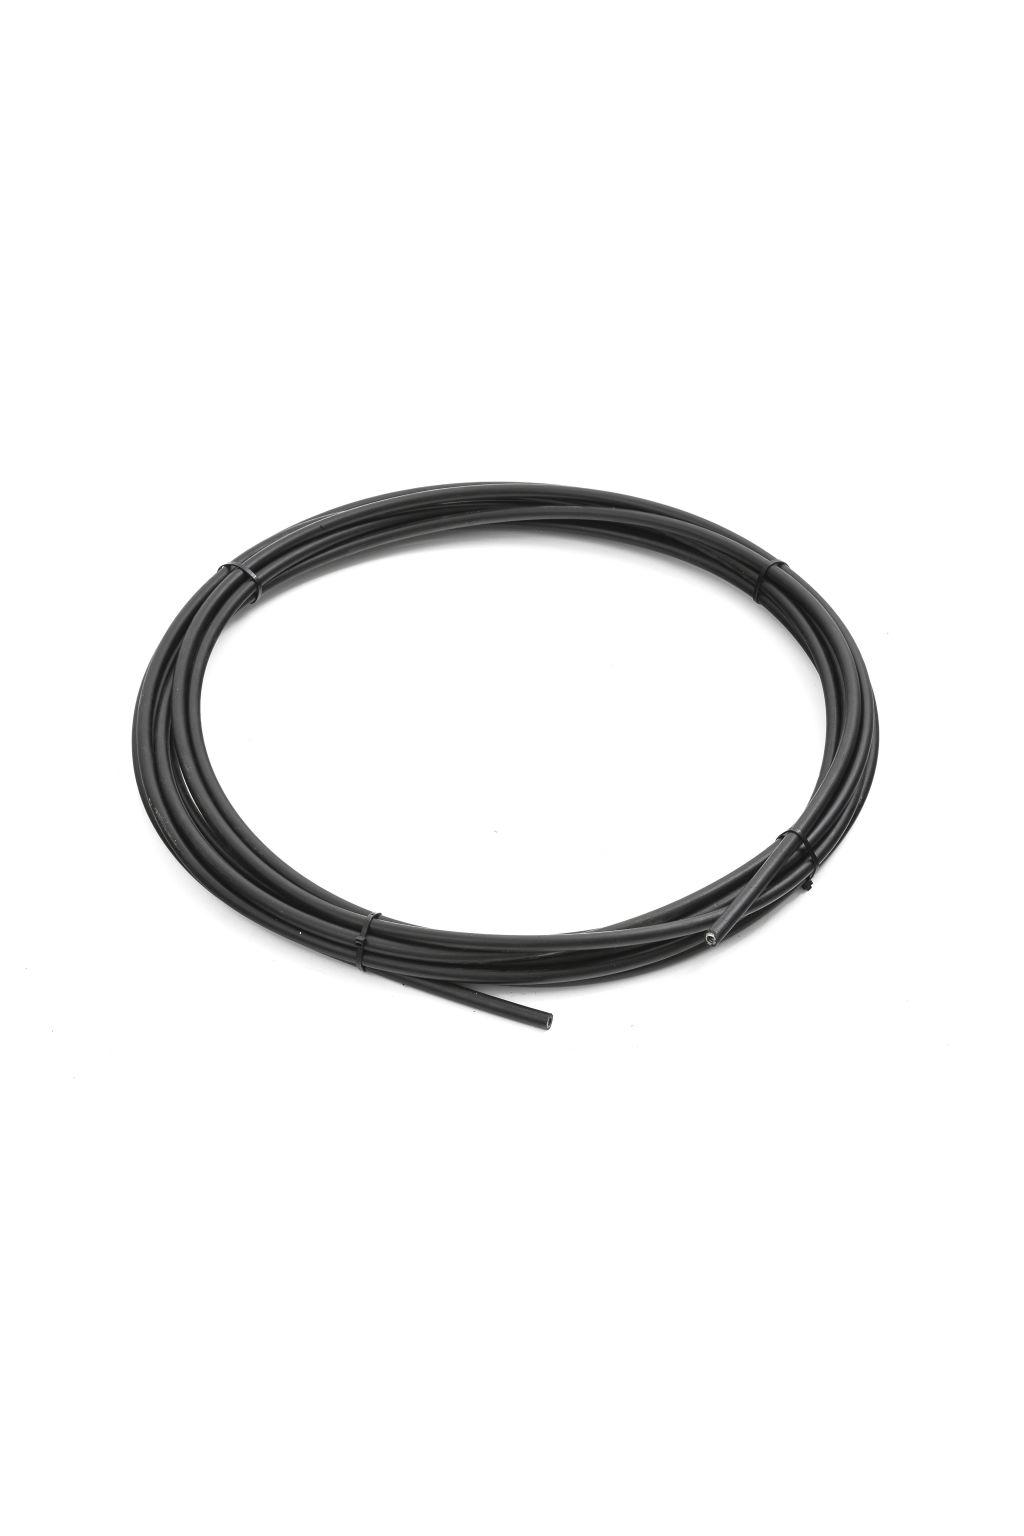 Wire conduit for wire drums Vaihtoehtoinen langanjohdin kokoonpanoihin, joissa langansyöttölaitteen ja lankatynnyrin välinen etäisyys on yli 5 metriä.